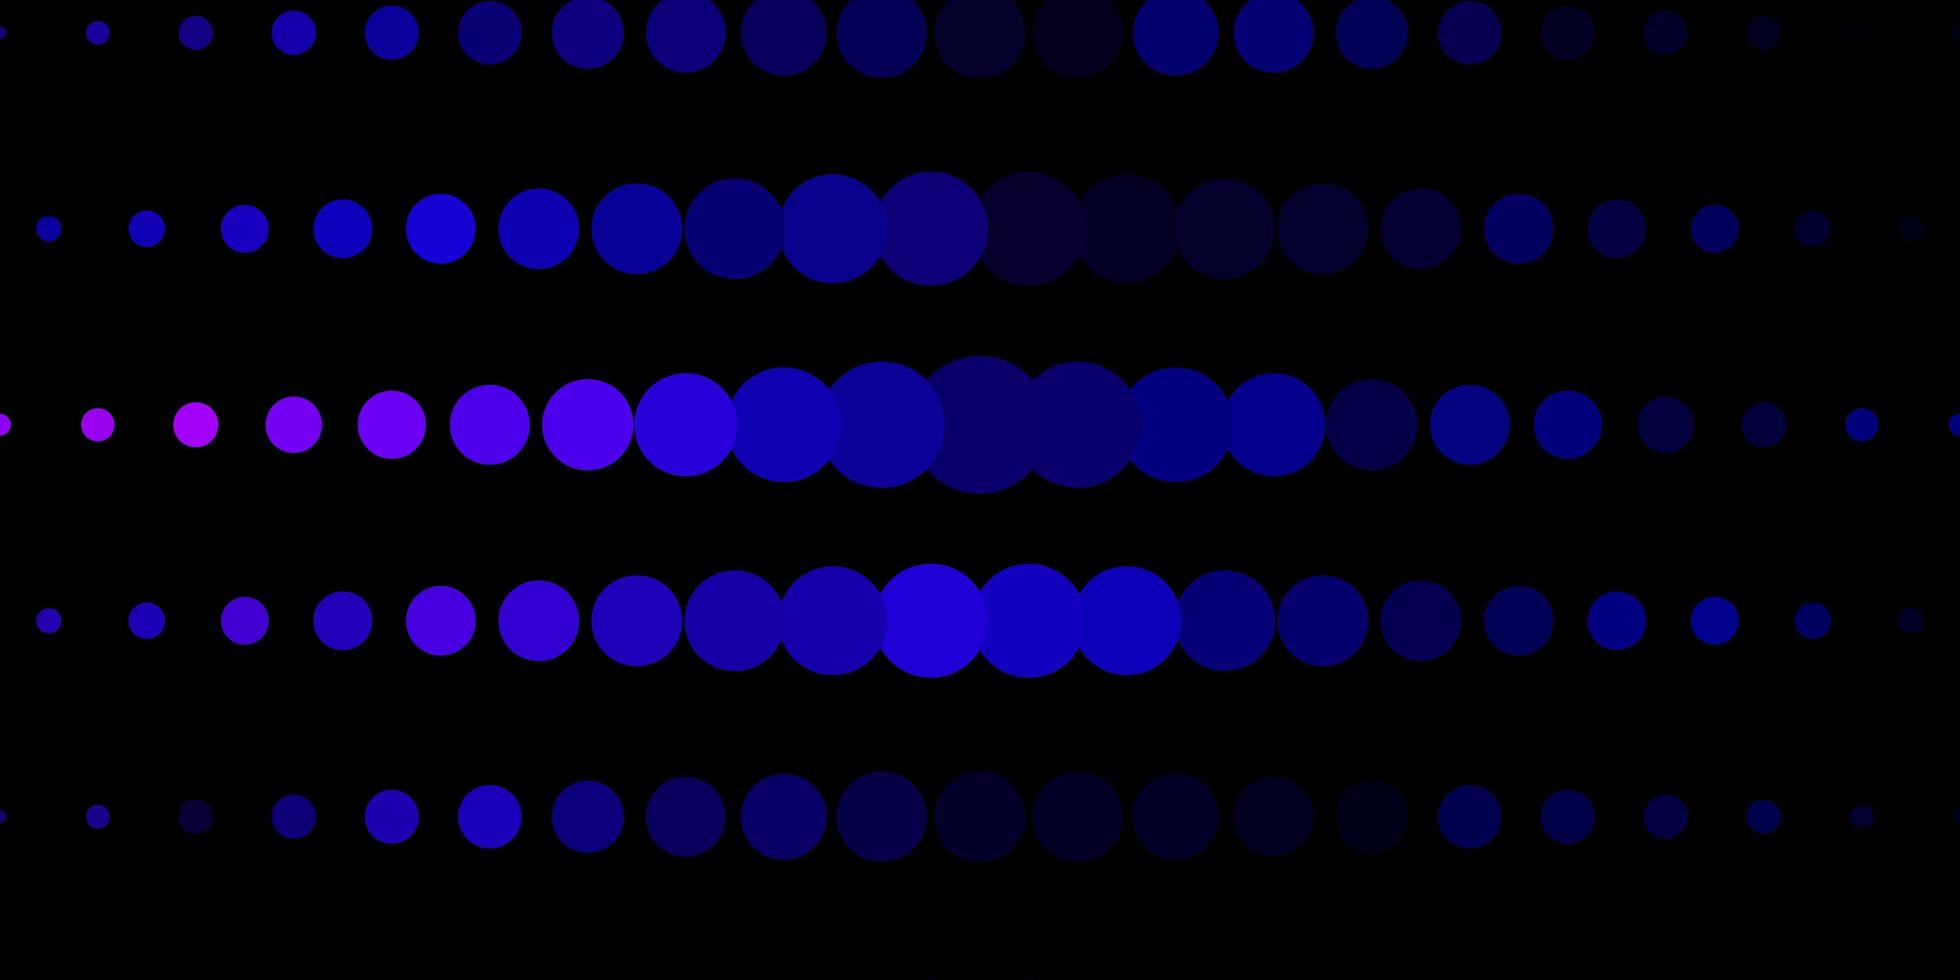 mörkrosa, blå vektorbakgrund med prickar. vektor